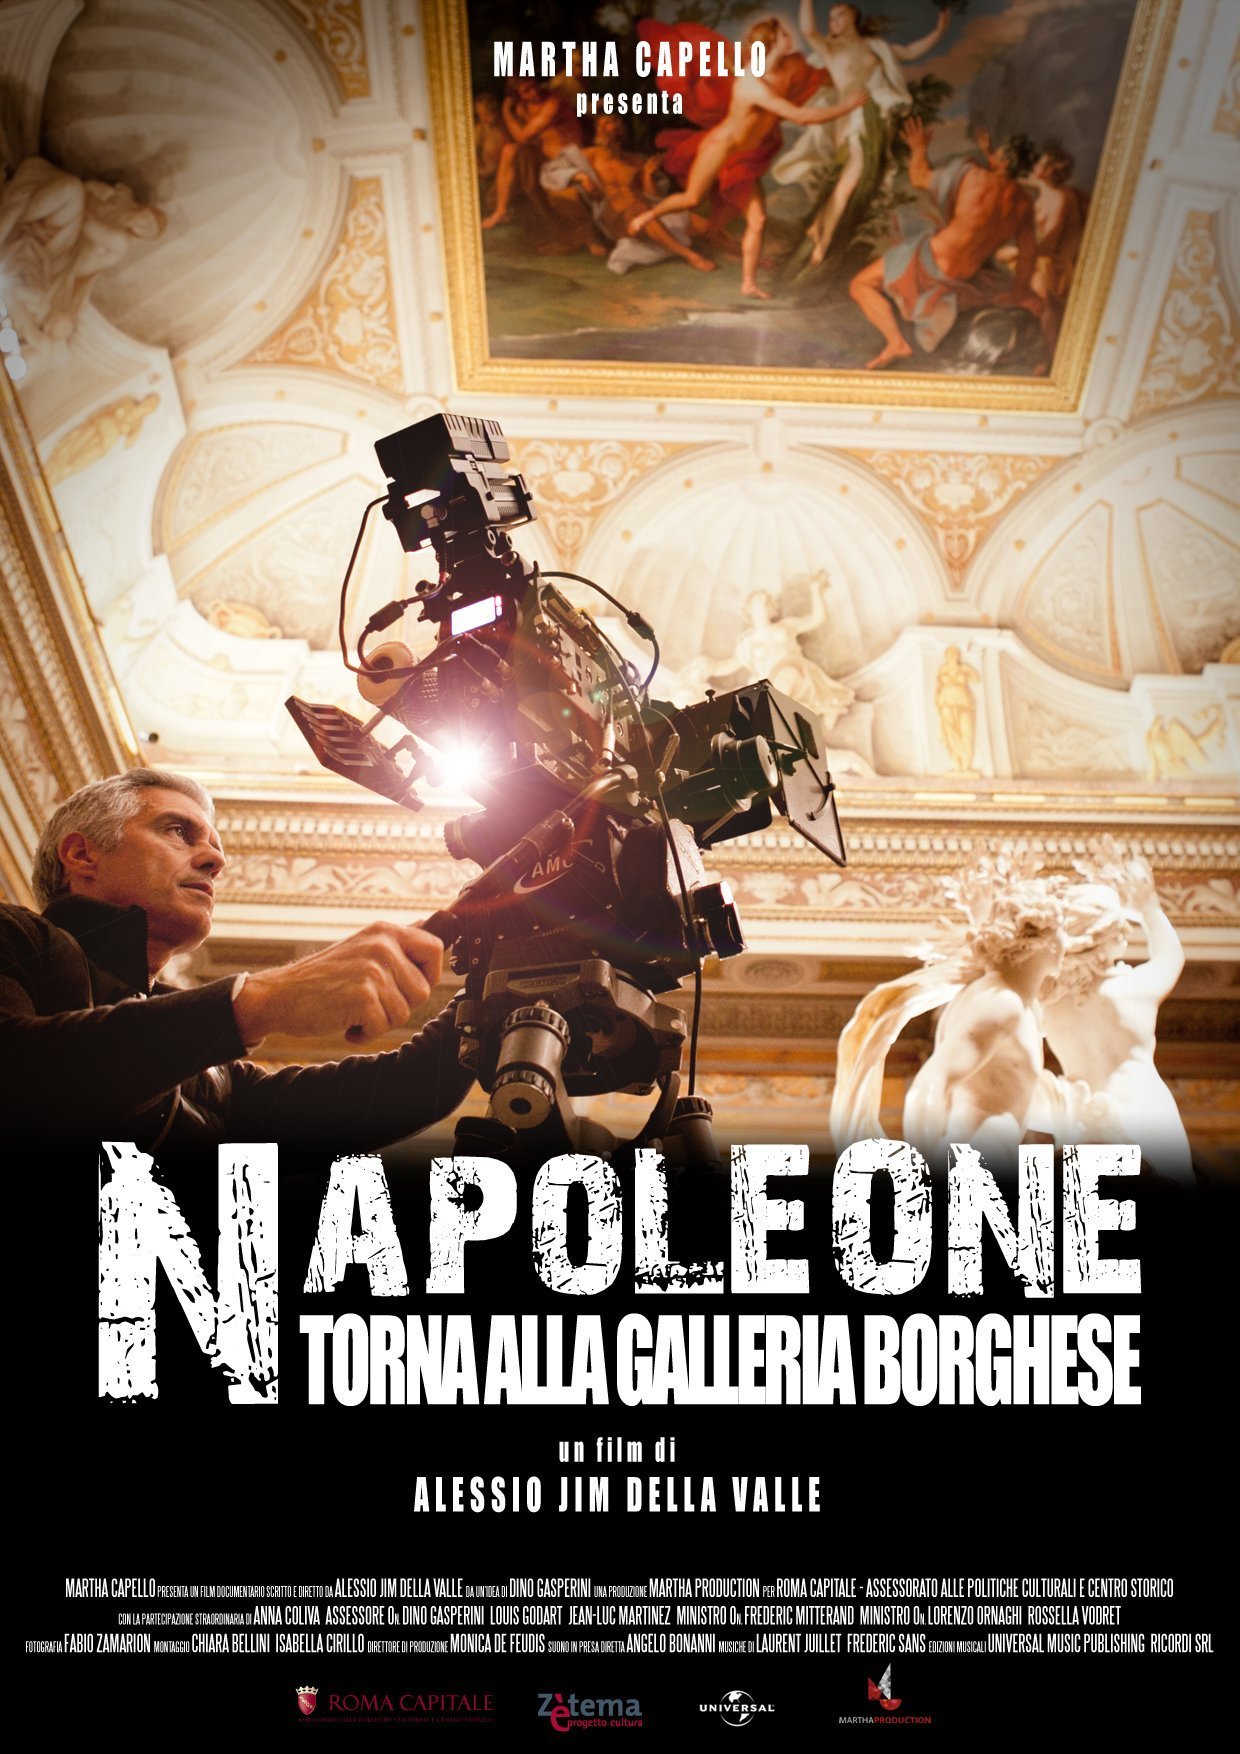 Фото - Napoleon Returns to Galleria Borghese: 1240x1754 / 359 Кб